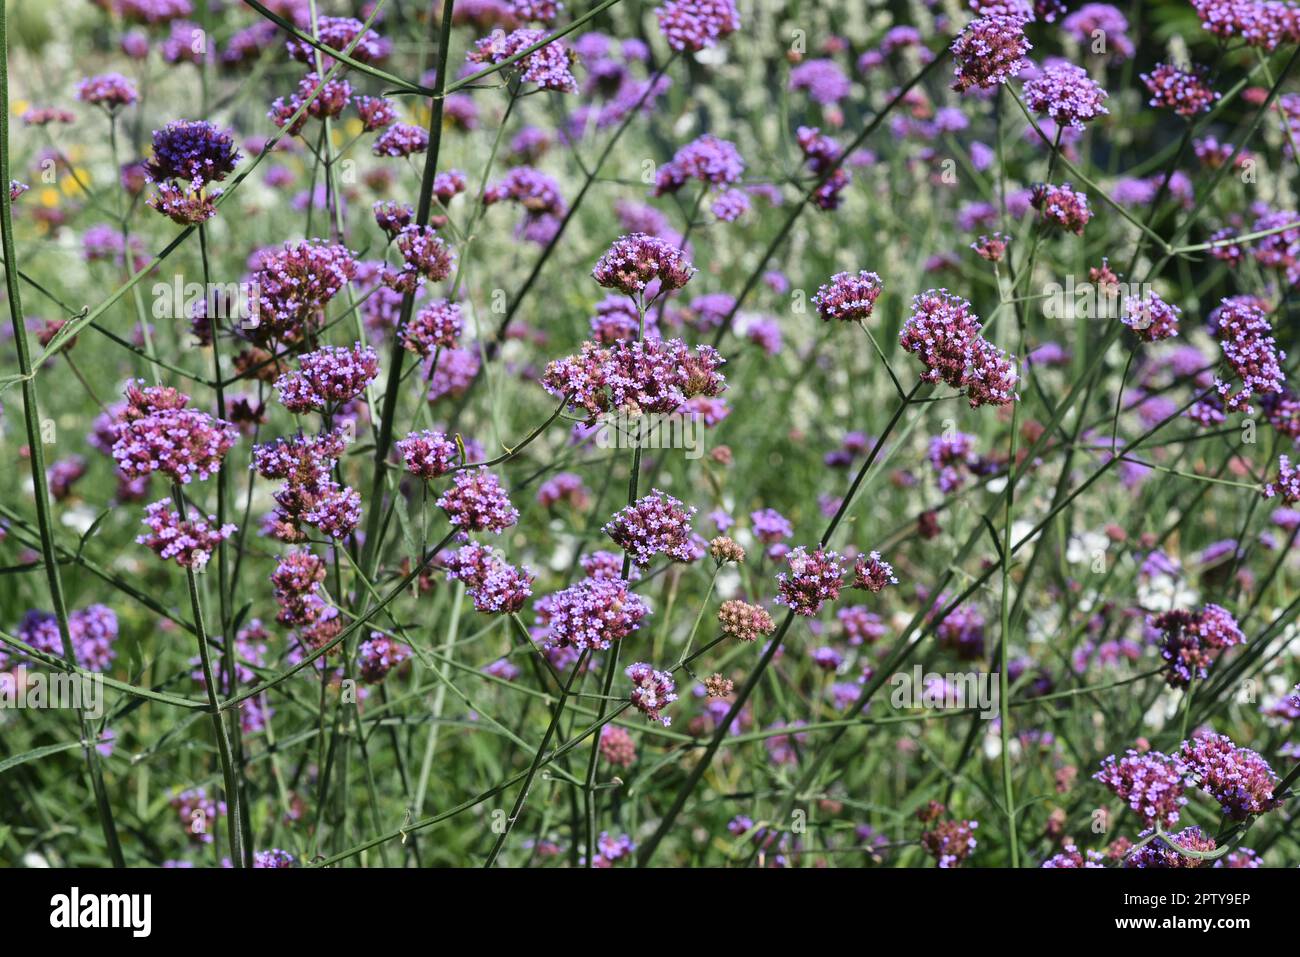 Patagonische Eisenkraut, Verbena bonariensis gehoert zur insgesamt ueber 250 Arten umfassenden Gattung Verbena und ist eine schoene Sommerblume. Patag Stock Photo